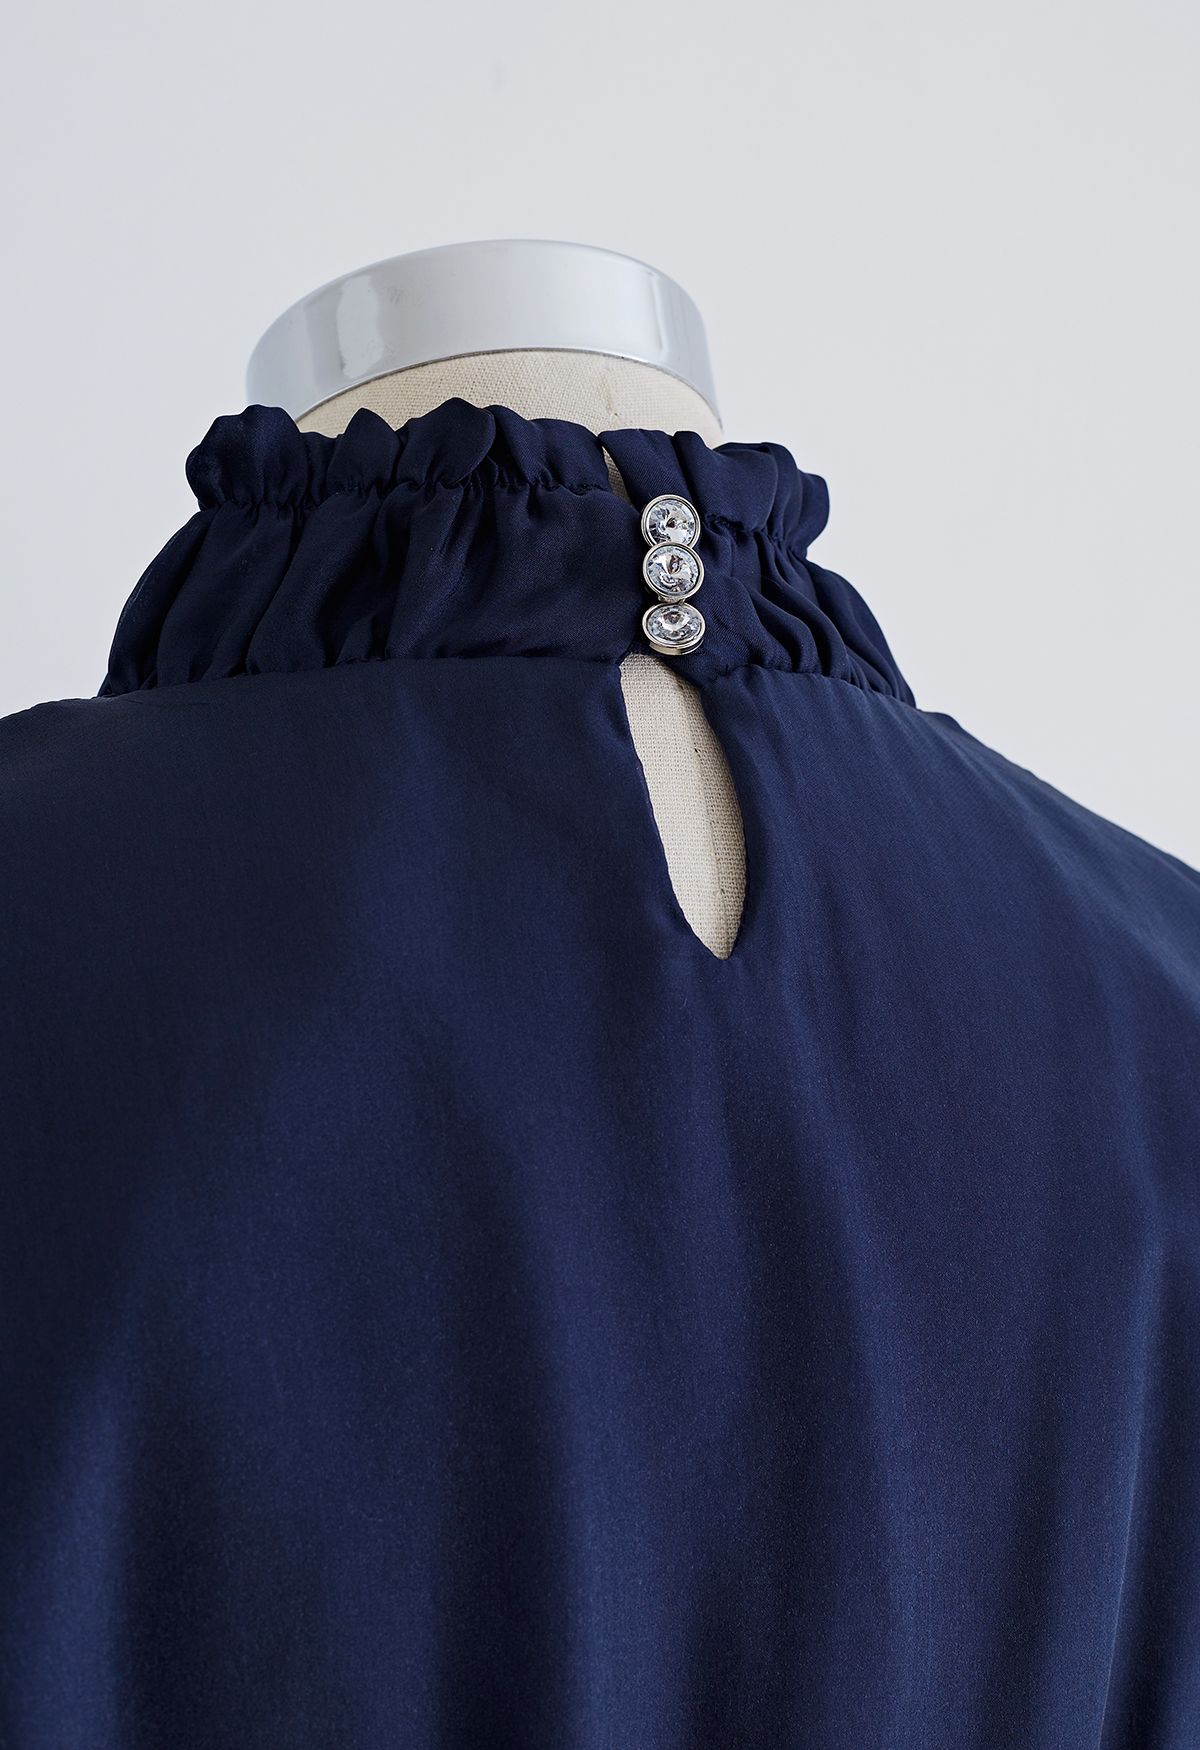 Wunderschönes Kleid mit Rüschen und durchsichtigem Netz mit Schleifenausschnitt in Marineblau